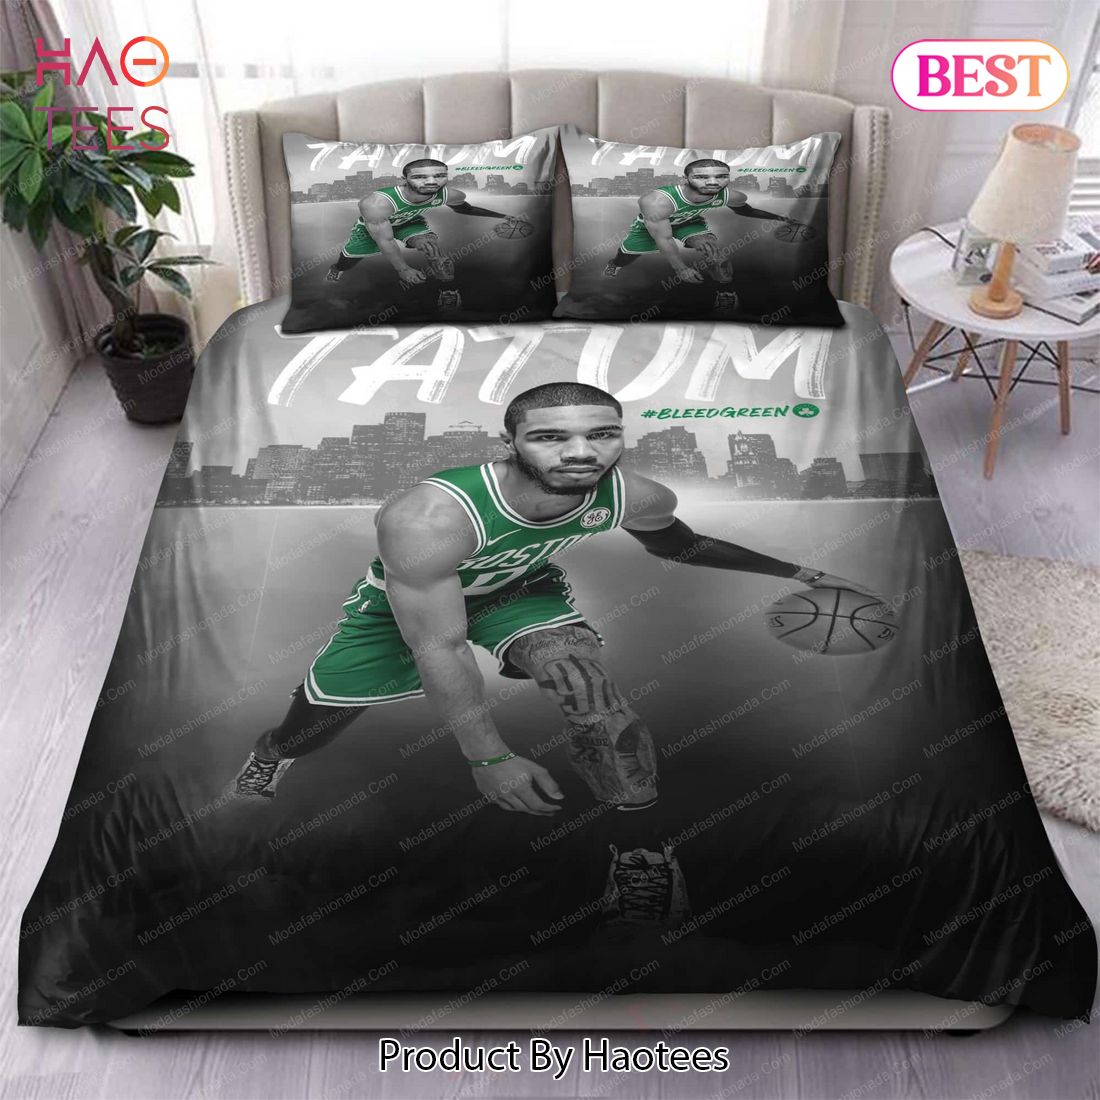 Buy Jayson Tatum Boston Celtics NBA 131 Bedding Sets Bed Sets, Bedroom Sets, Comforter Sets, Duvet Cover, Bedspread